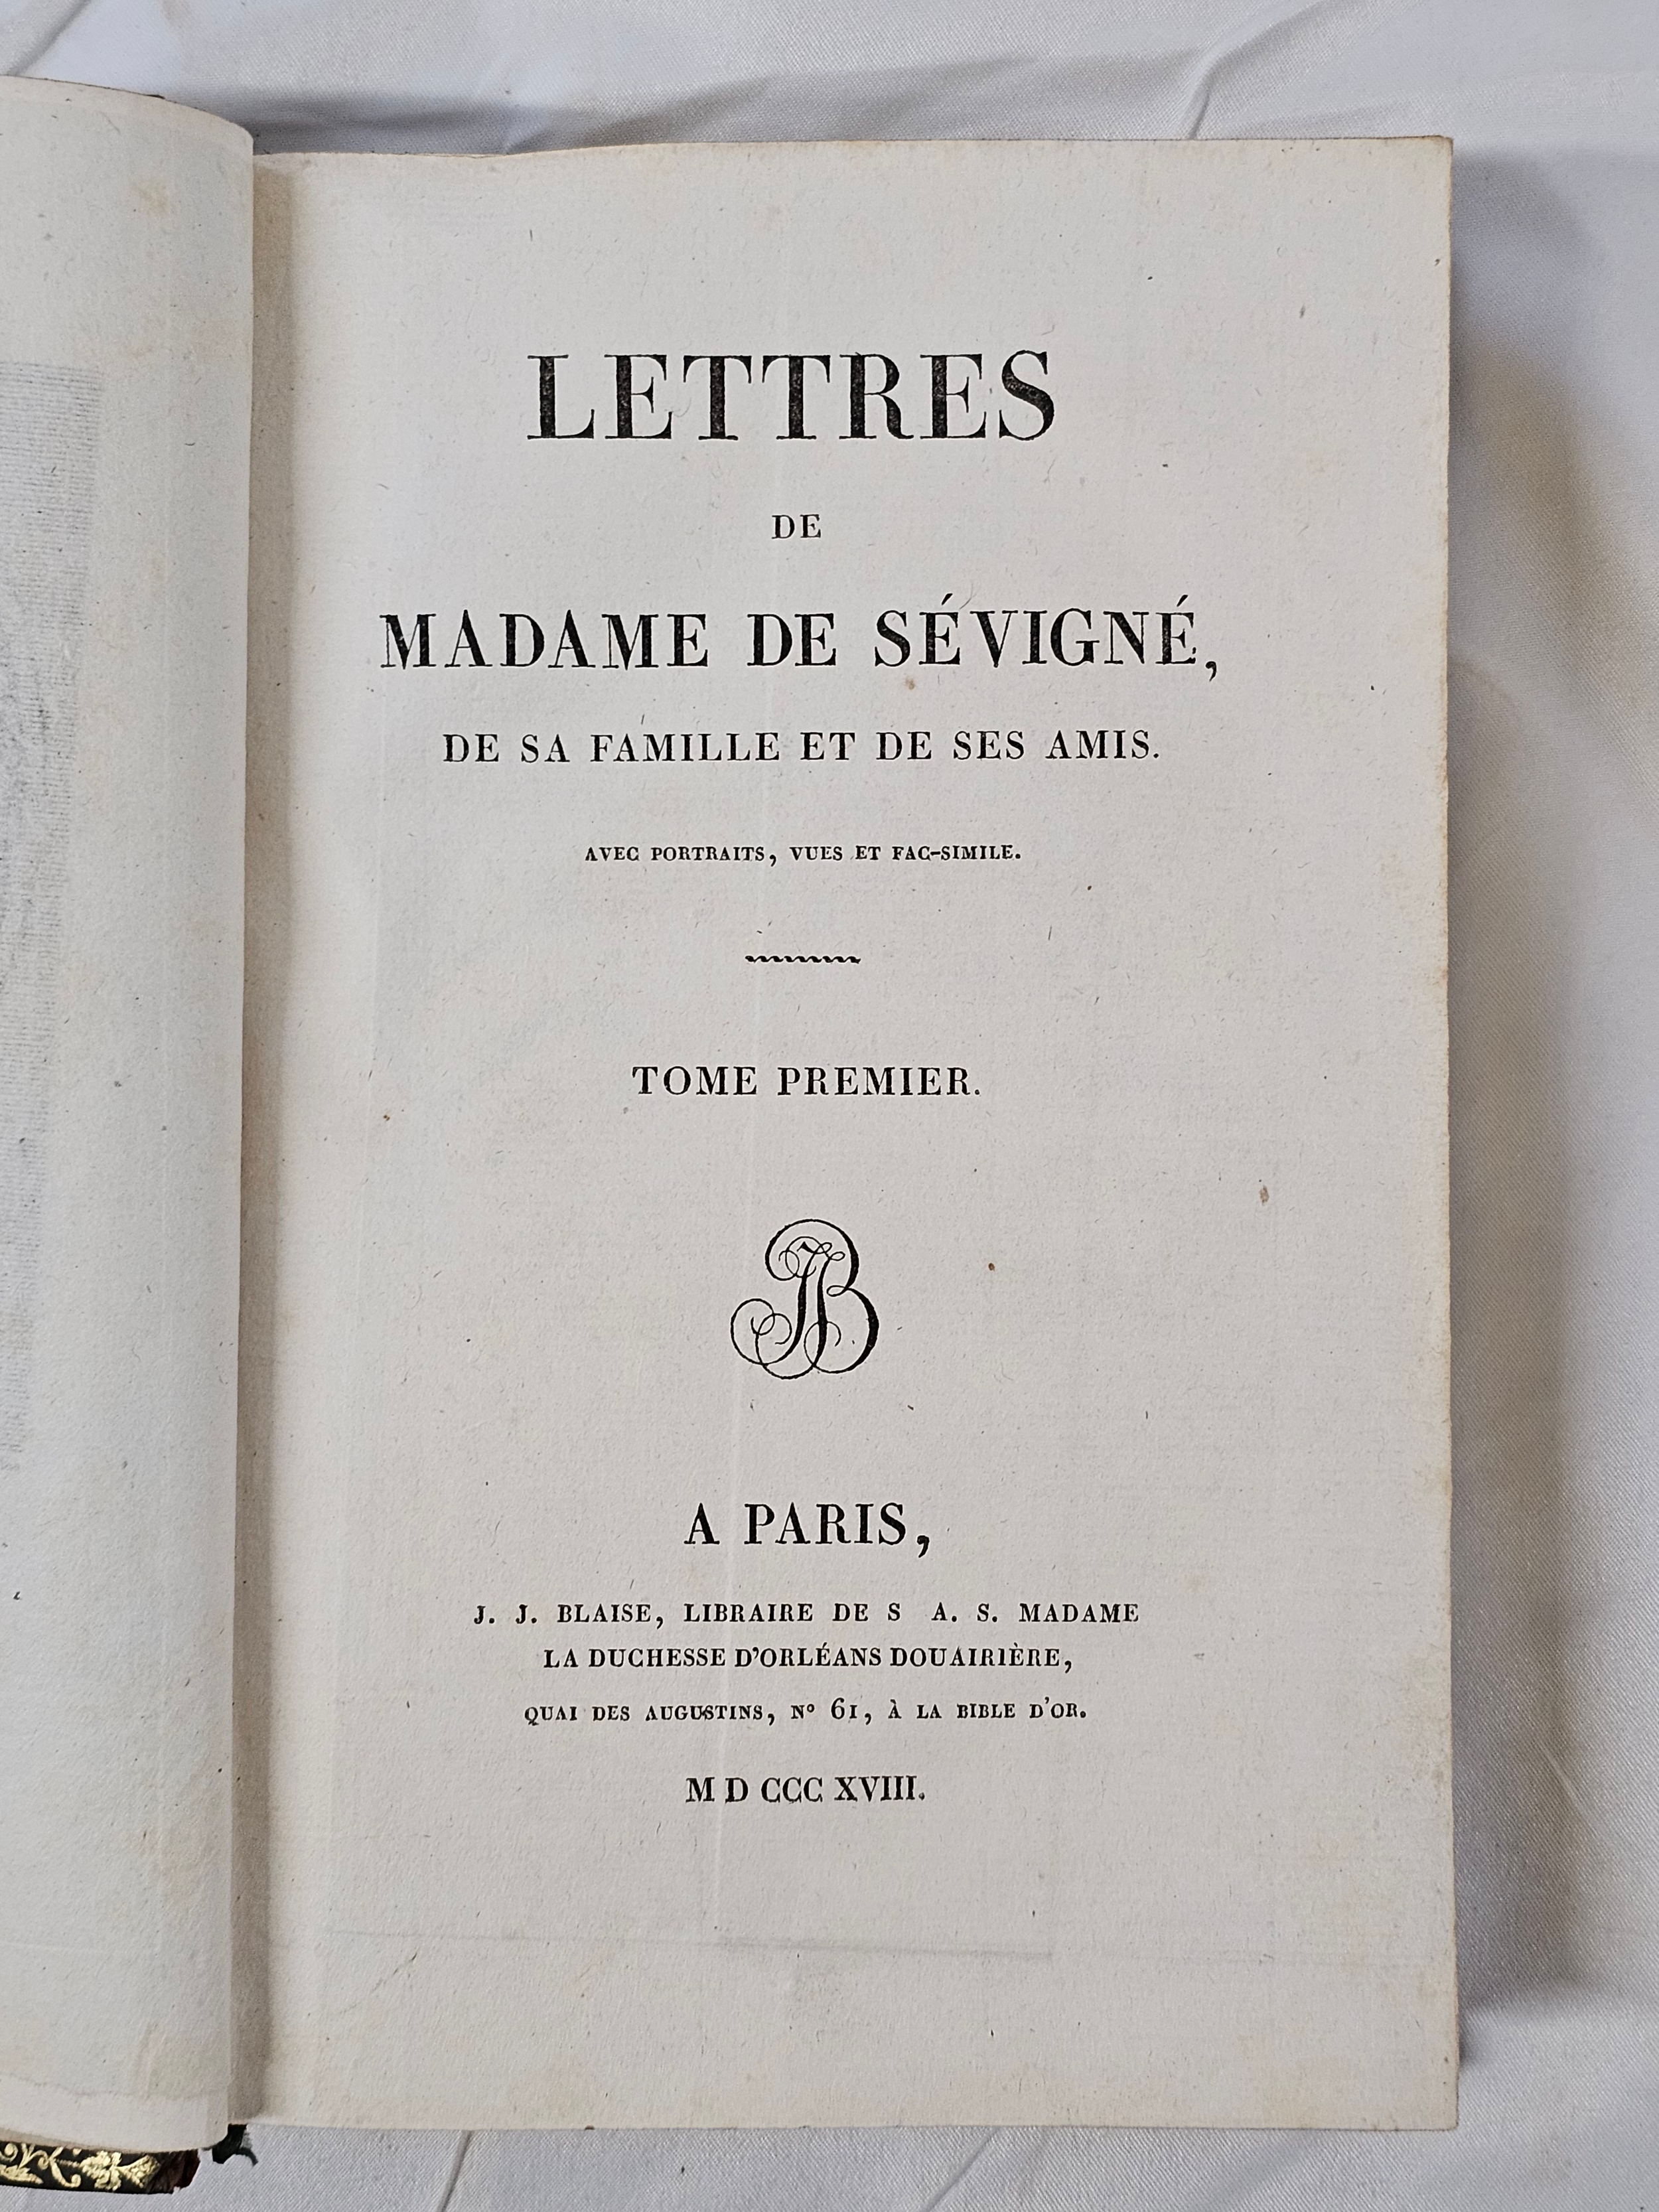 Lettres de Madame de Sévigné. Published Paris by J.J. Blaise, Libraire de S.A.S. Madame la - Image 8 of 8